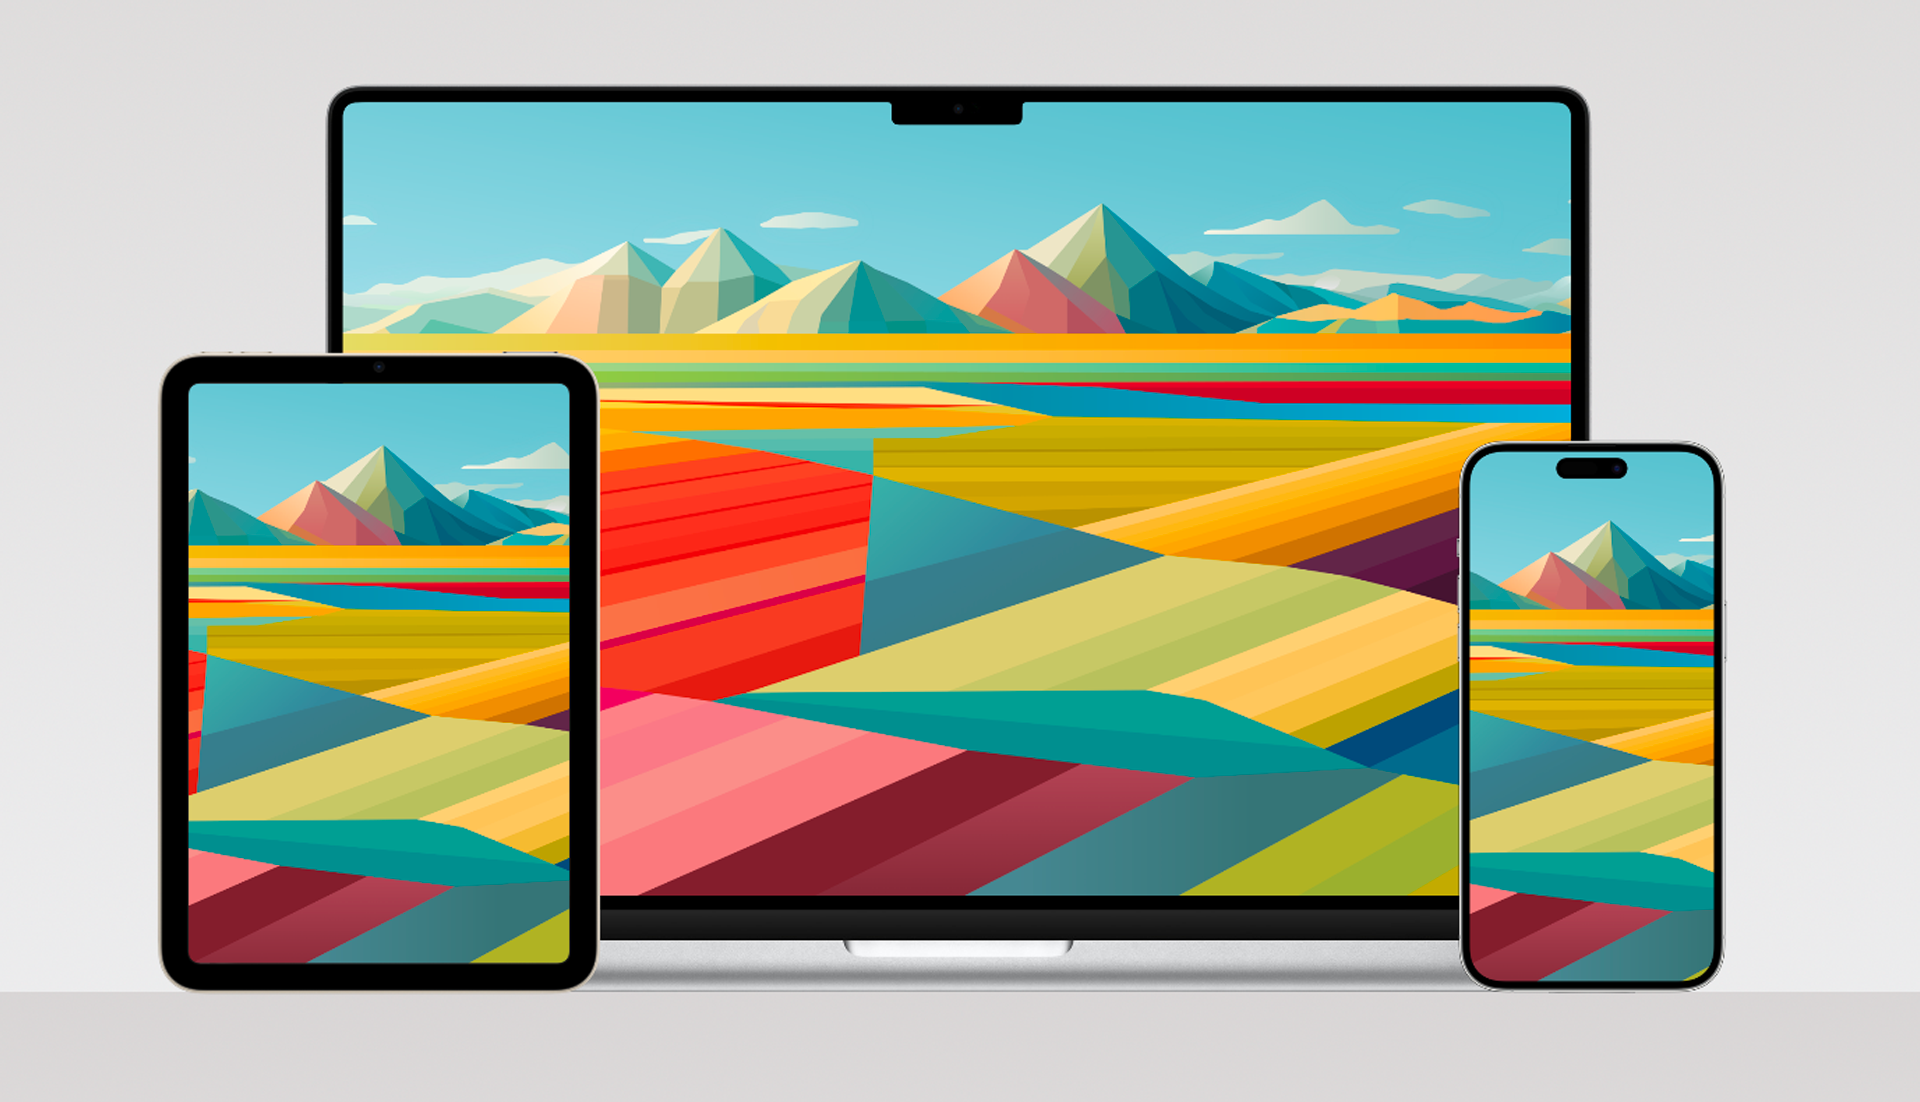 Fonds d’écran • 3 superbes fonds d’écran colorés pour Mac, iPhone et iPad